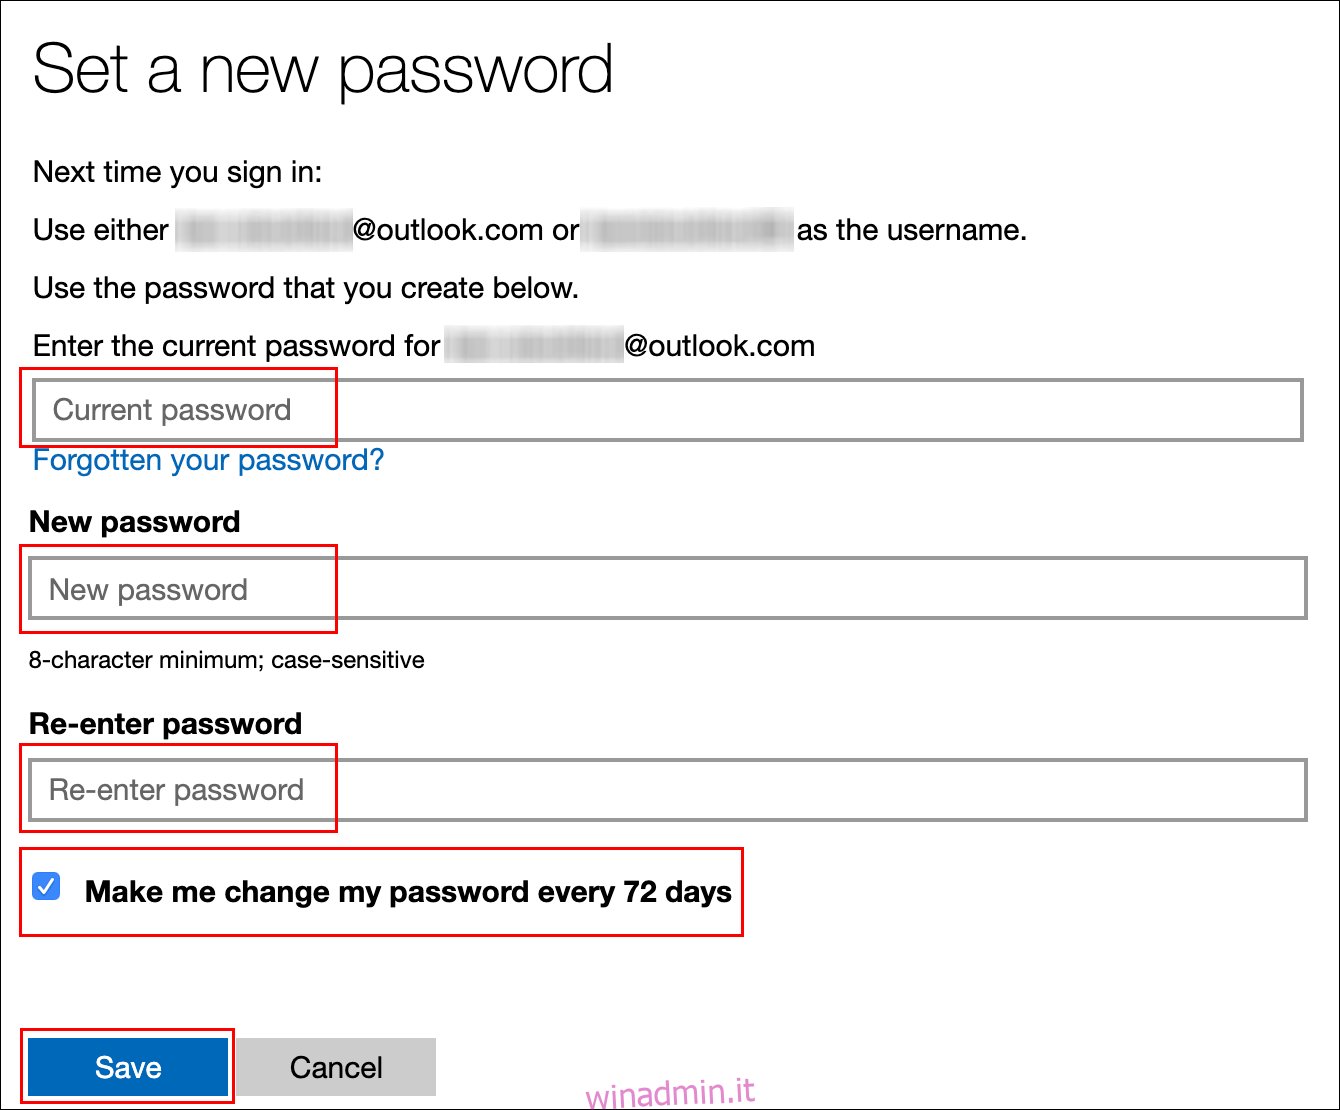 Digita la tua password attuale, digita una nuova password, fai clic sulla casella di controllo accanto a 